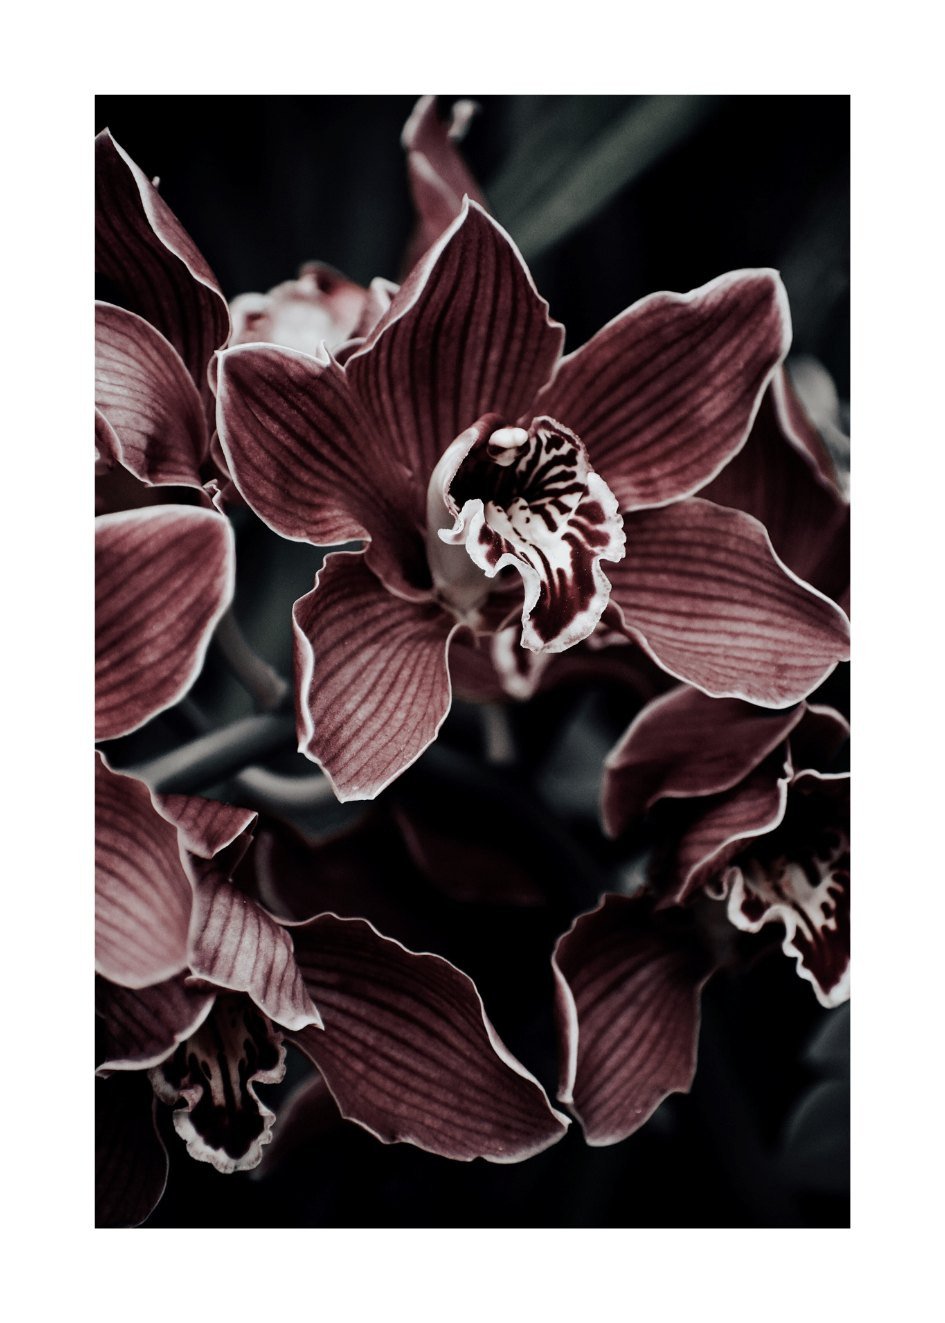 Orchideen Bilder